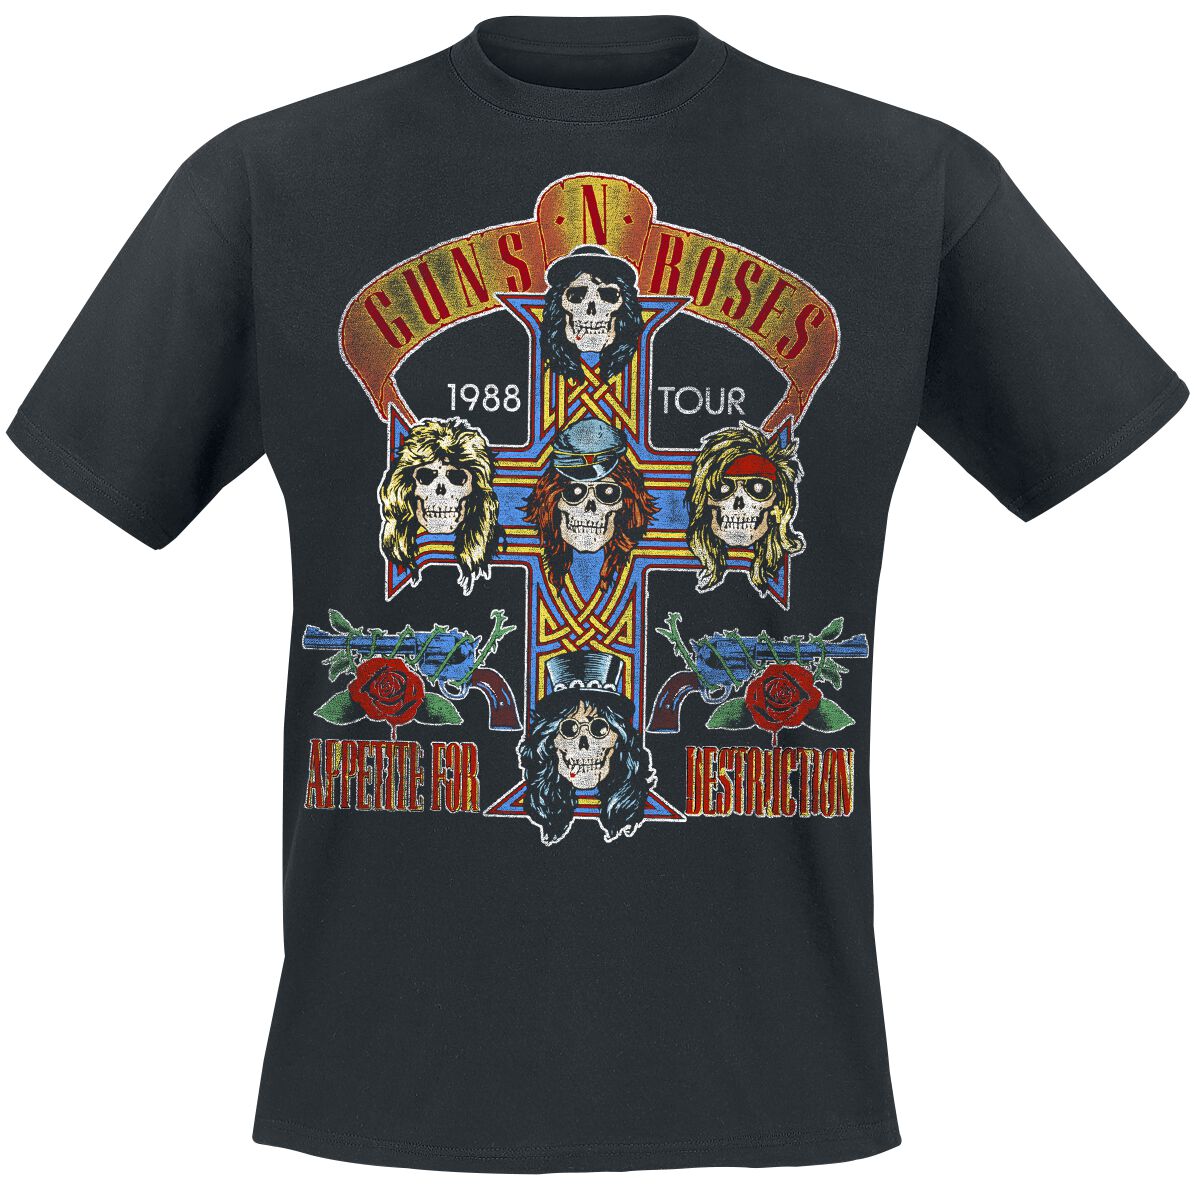 Guns N` Roses T-Shirt - Tour 1988 - S bis 5XL - für Männer - Größe M - schwarz  - Lizenziertes Merchandise!